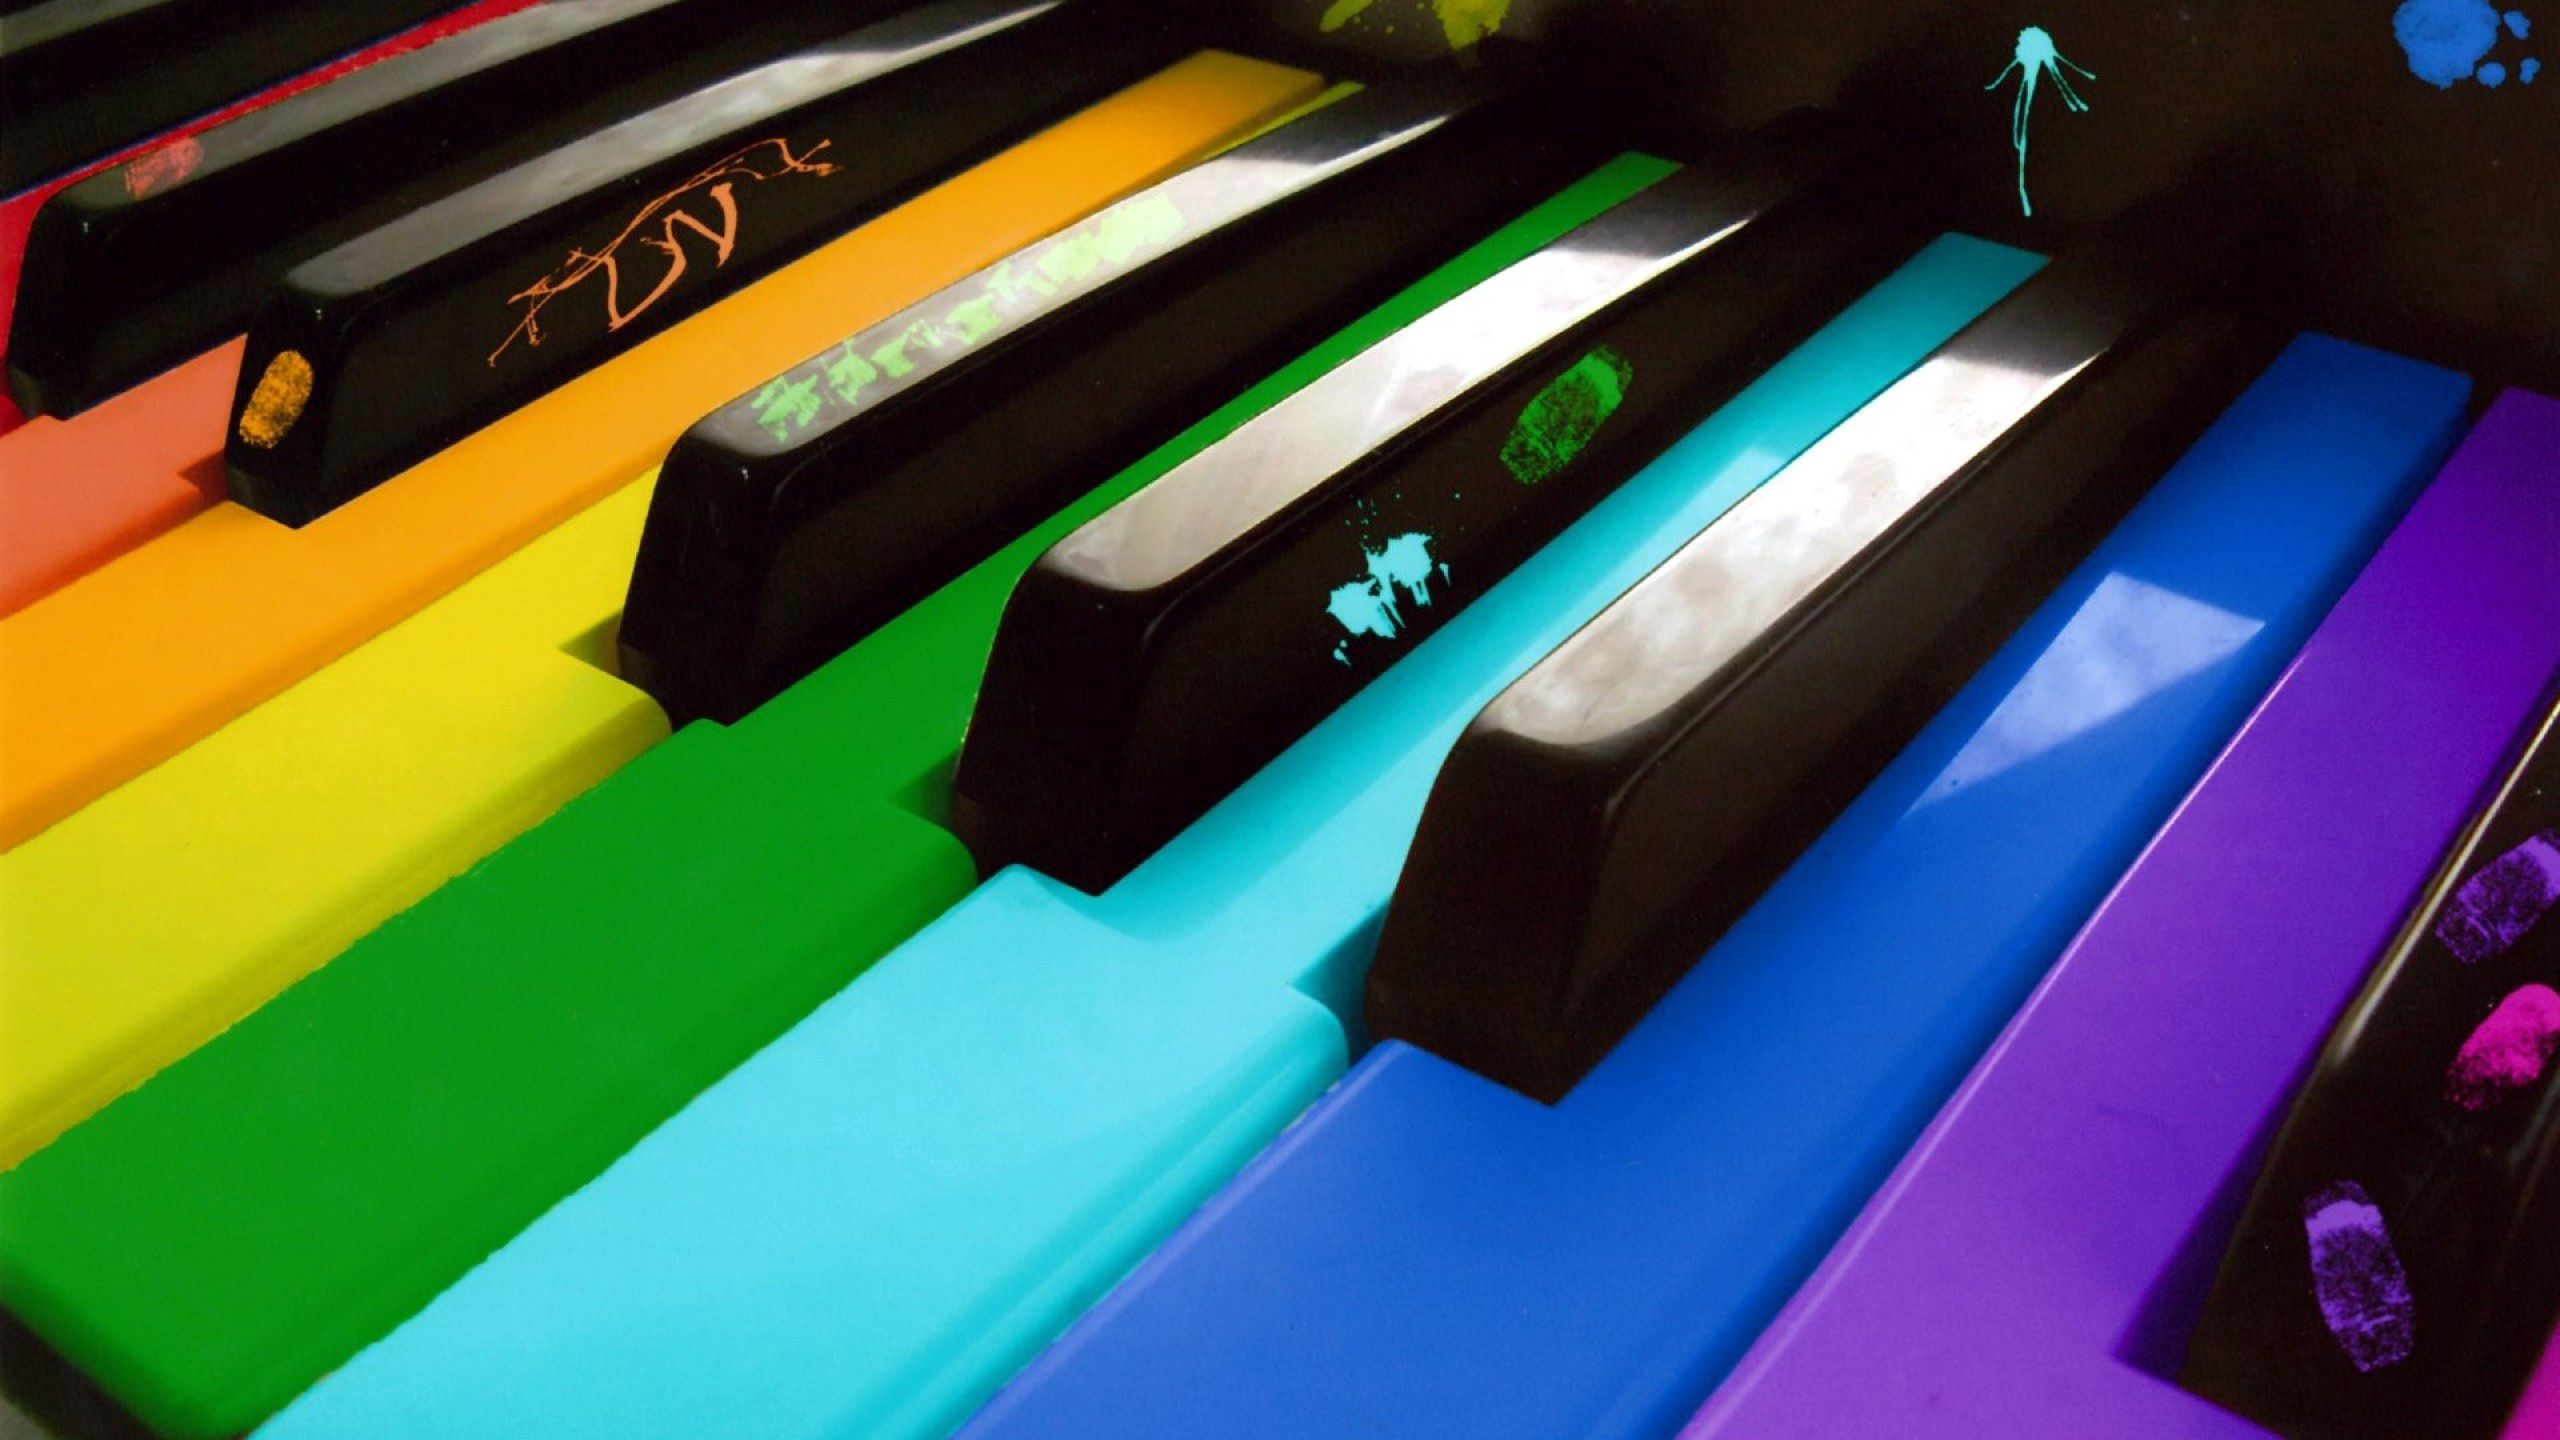 piano, motley, keys, miscellaneous, miscellanea, multicolored Full HD